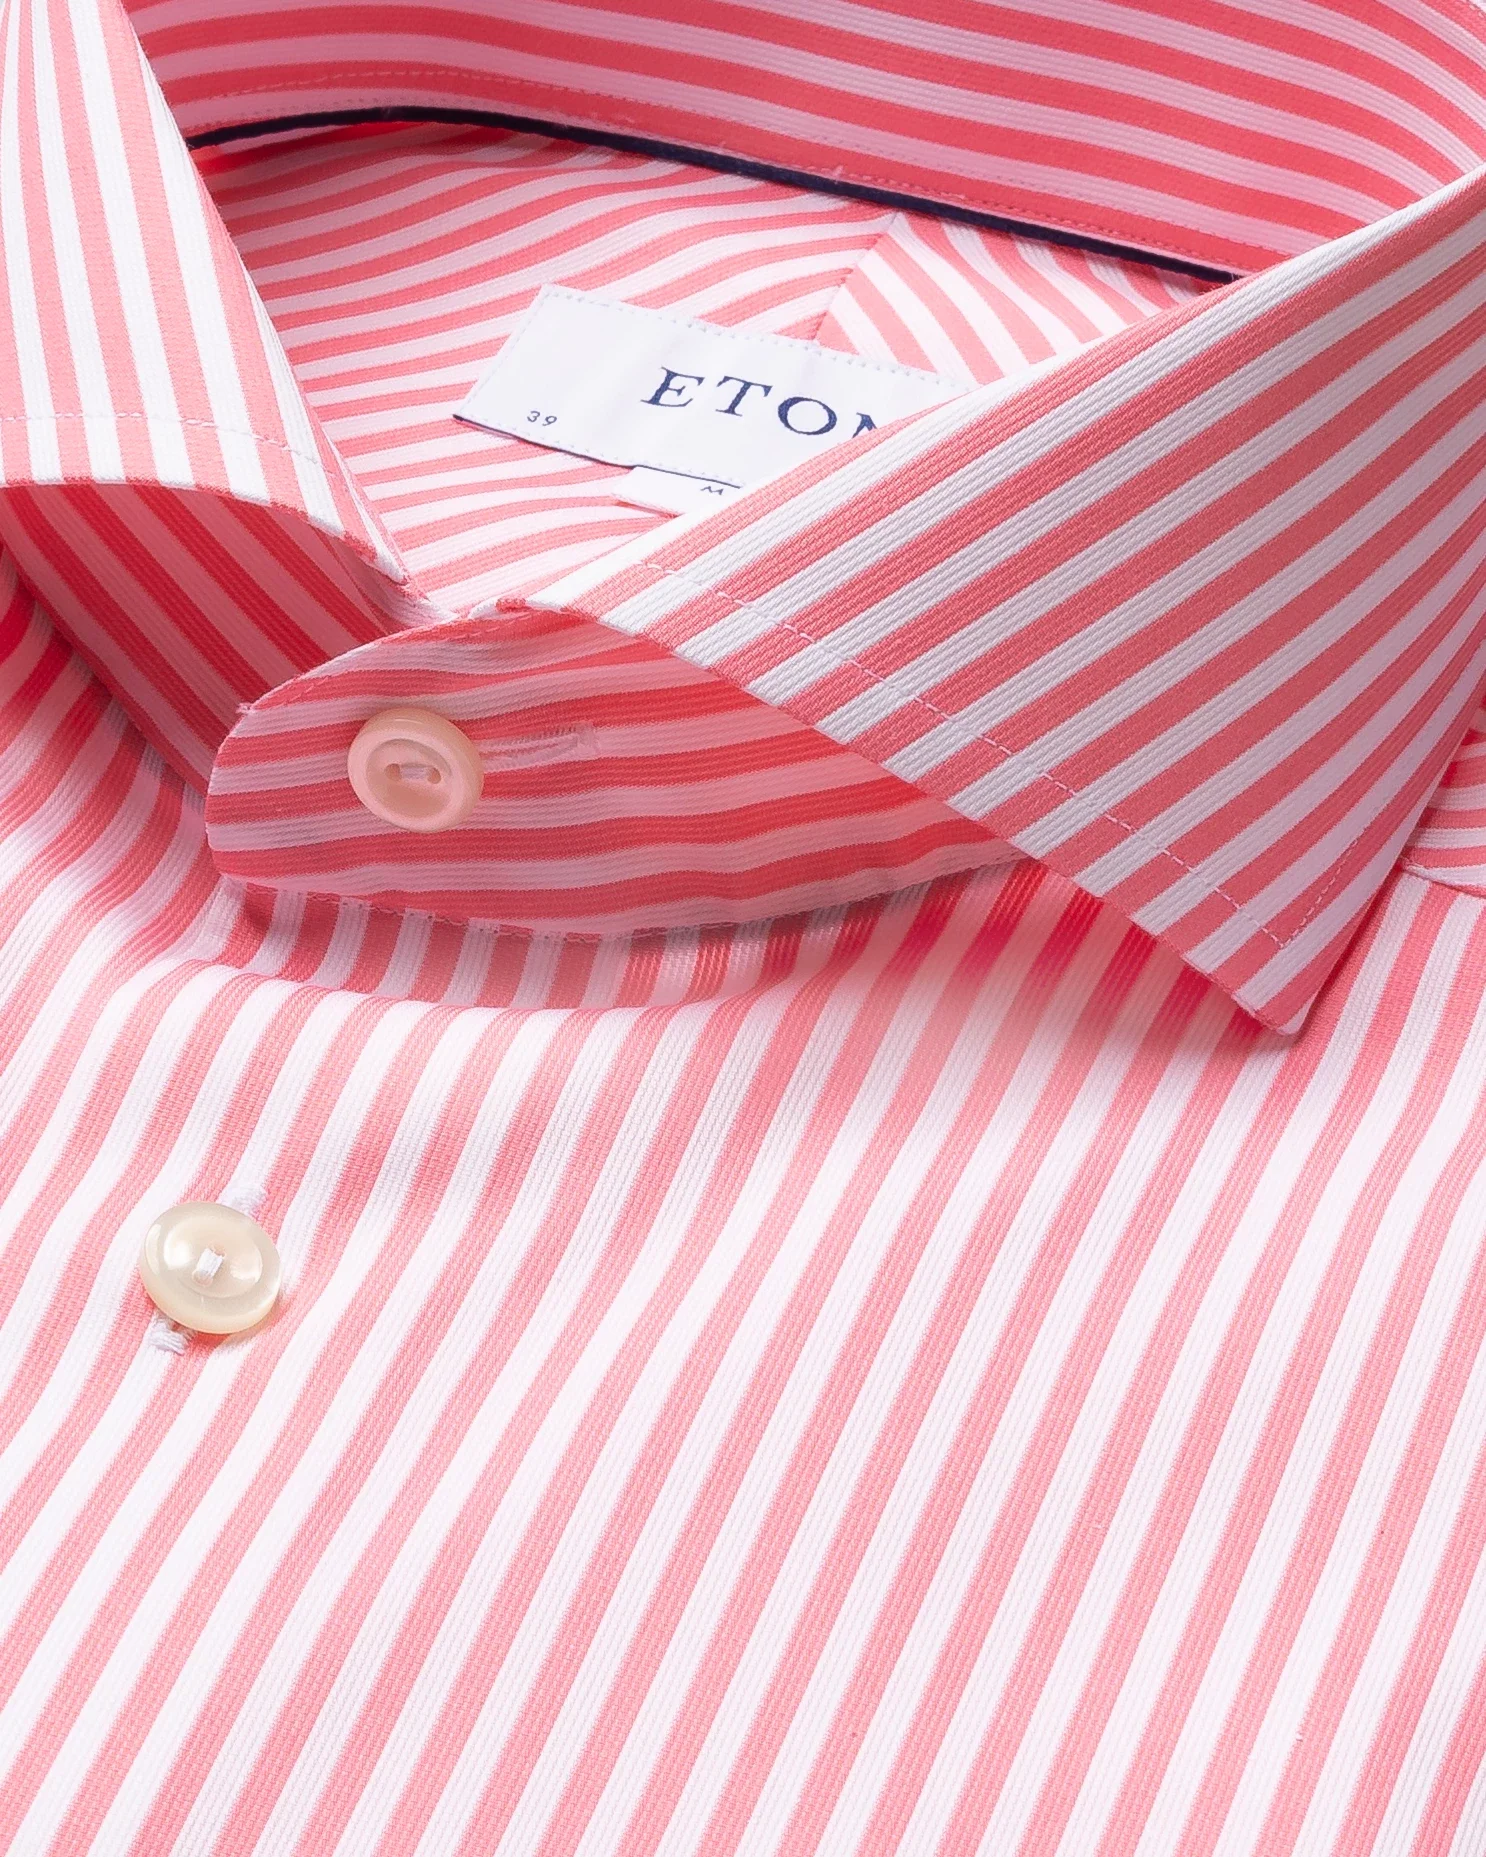 Eton - pink superfine satin shirt